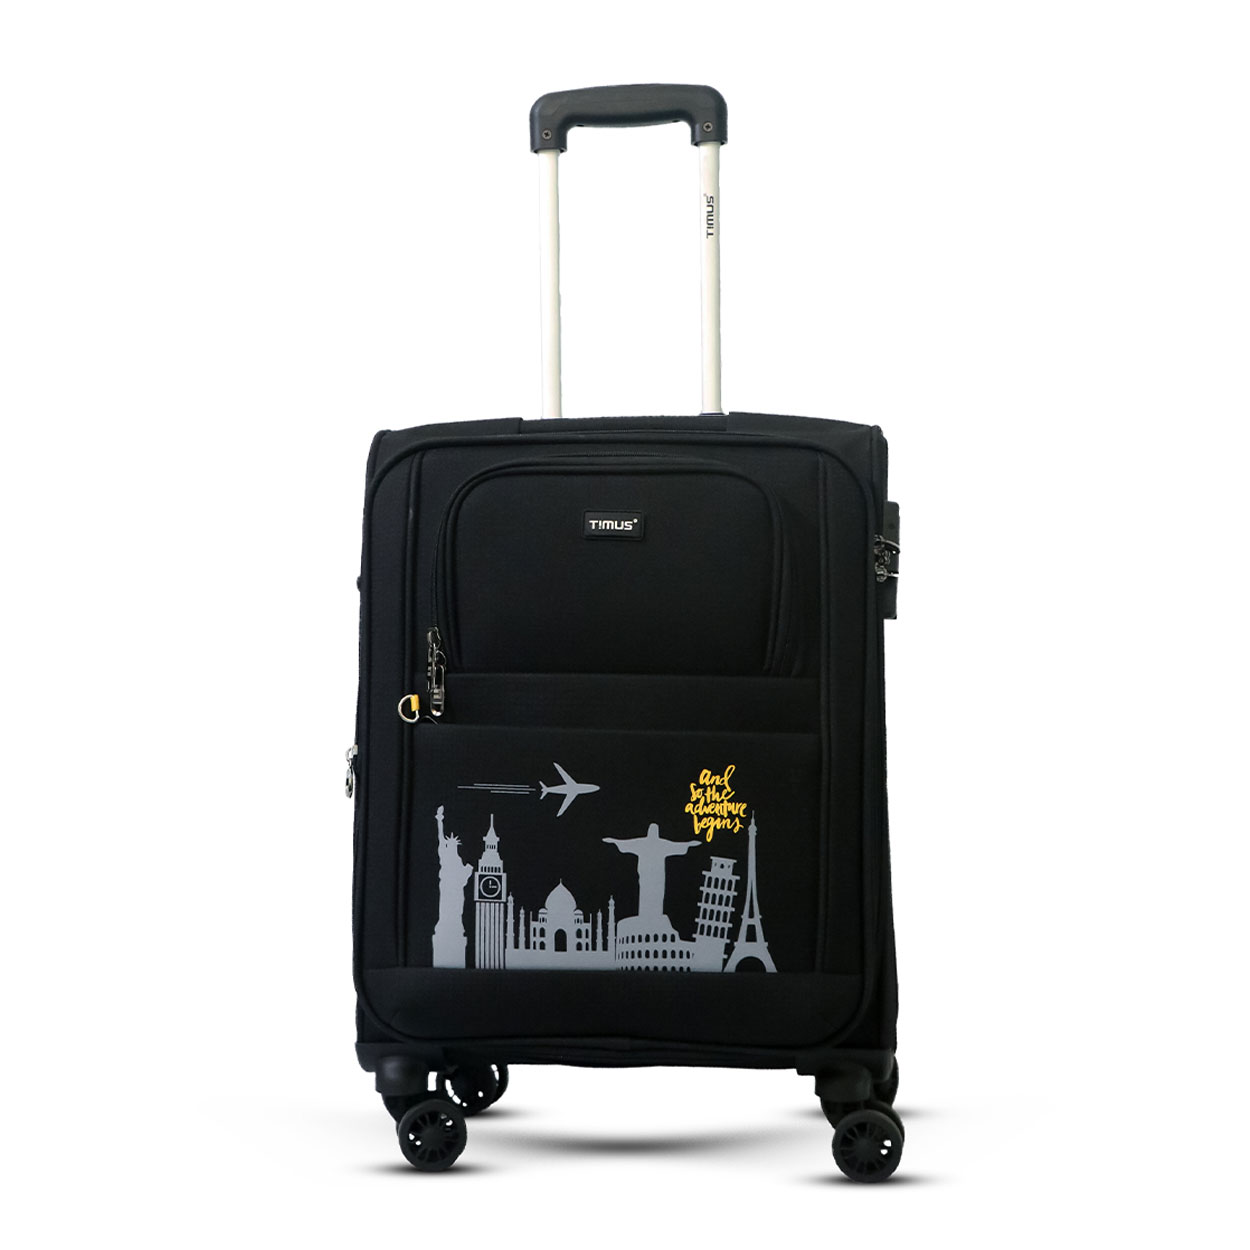 Timus-Lifestyle-Luggage-Soft-Luggage-trolley-bag-Salsa-Plus-Luggage-Trolley-Bag-58cm-Black-1